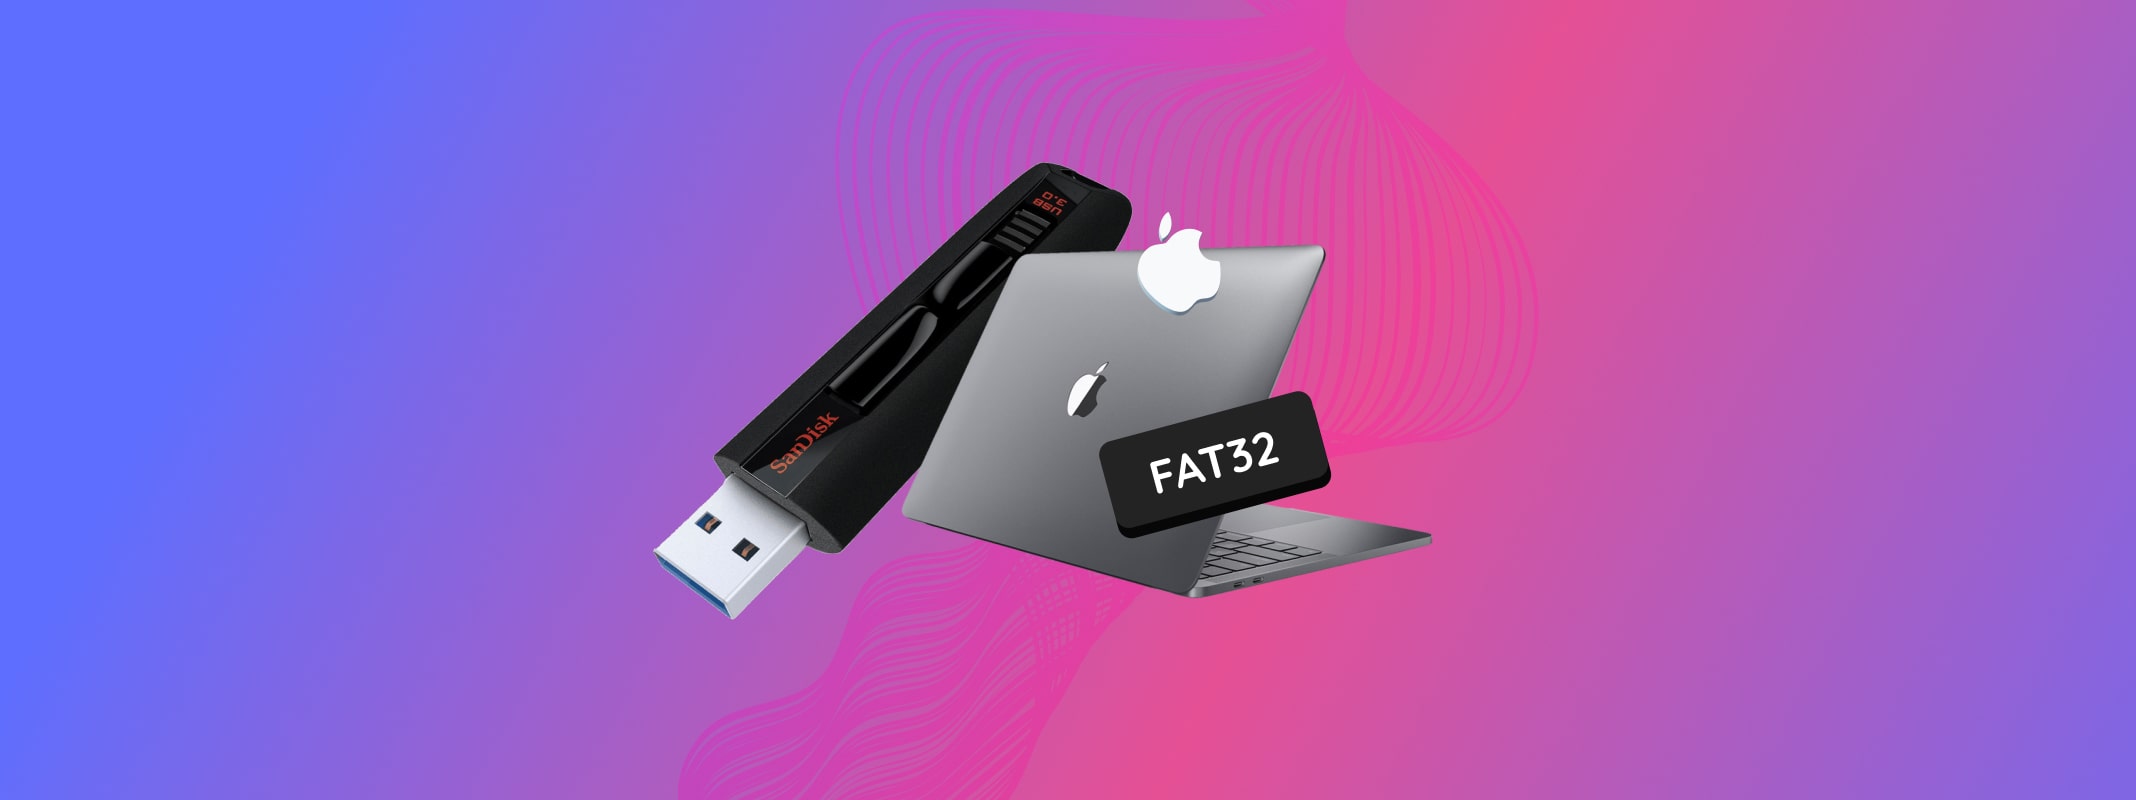 mac format usb fat32 tool